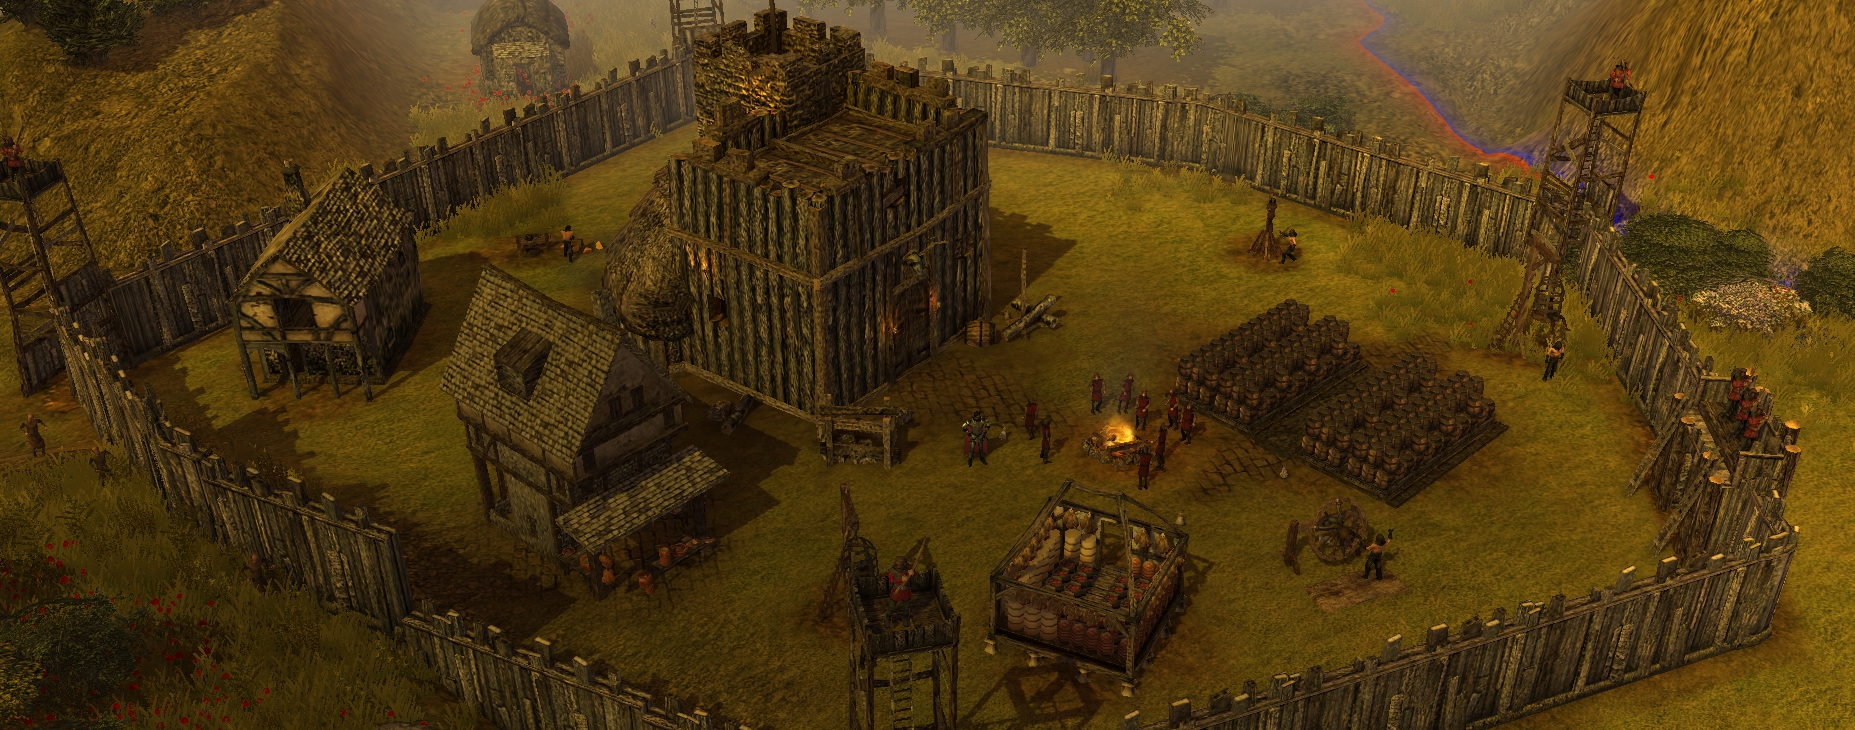 lost village stronghold kingdoms